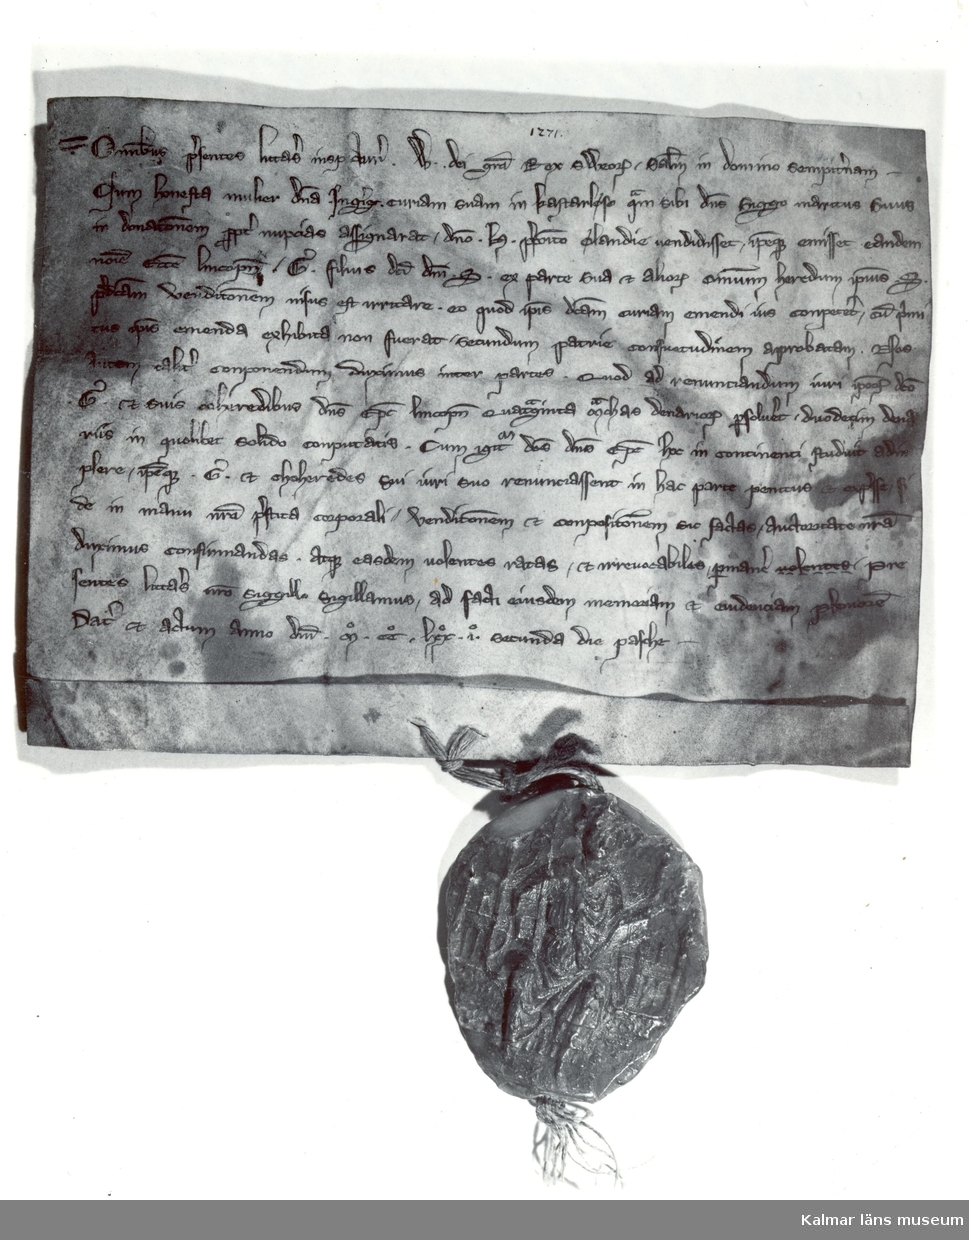 Konung Valdemars brev 6.4 1271 angående Ankegärdet i Kastlösa.